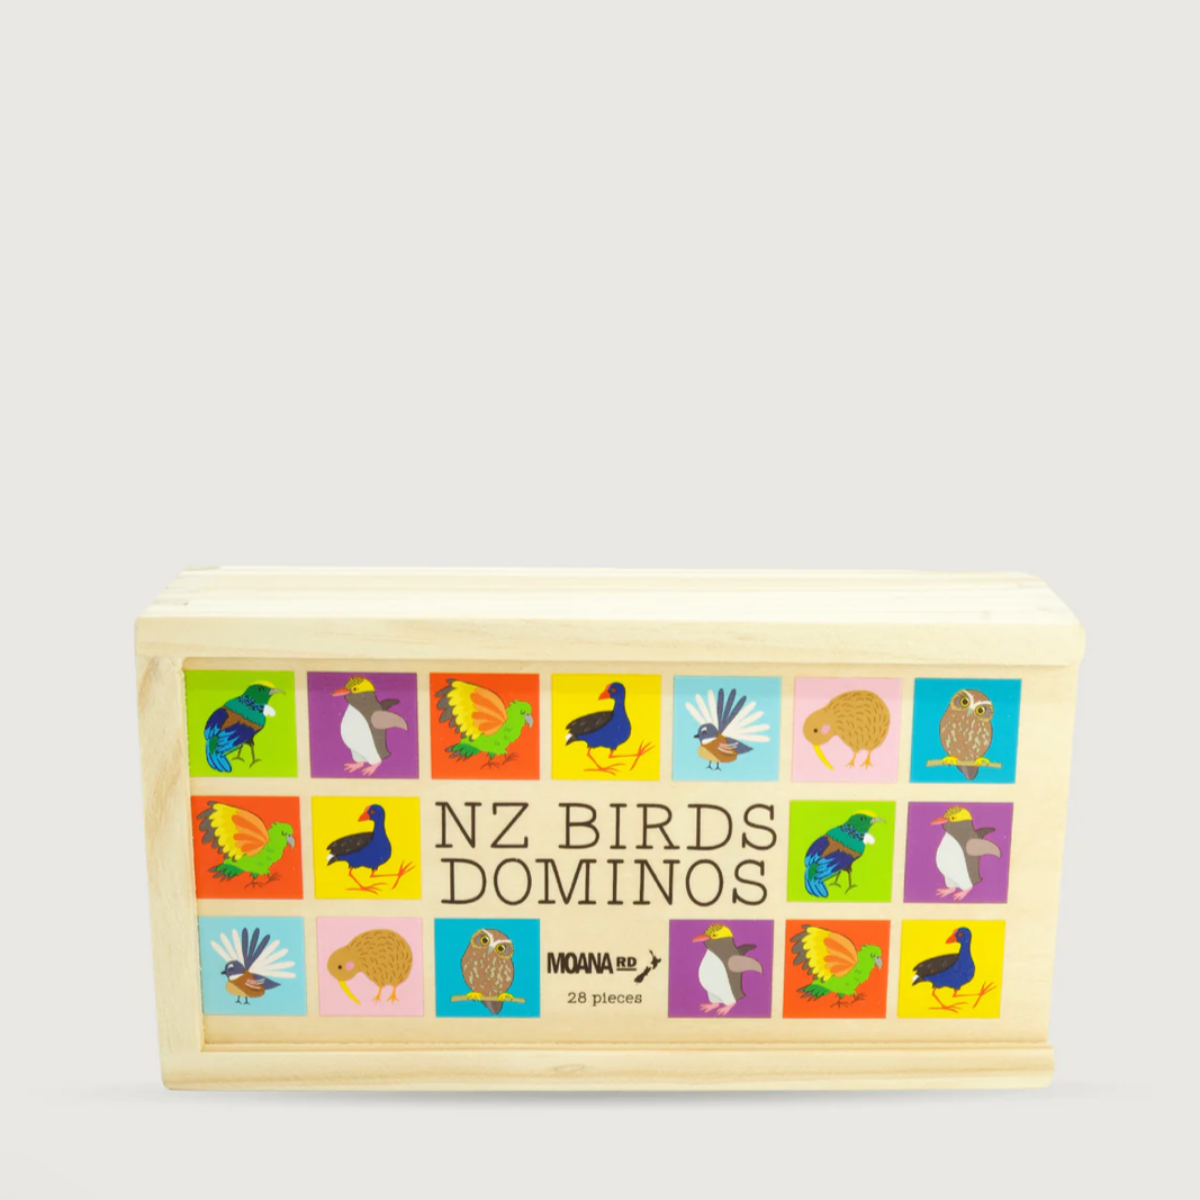 Dominoes - NZ Birds